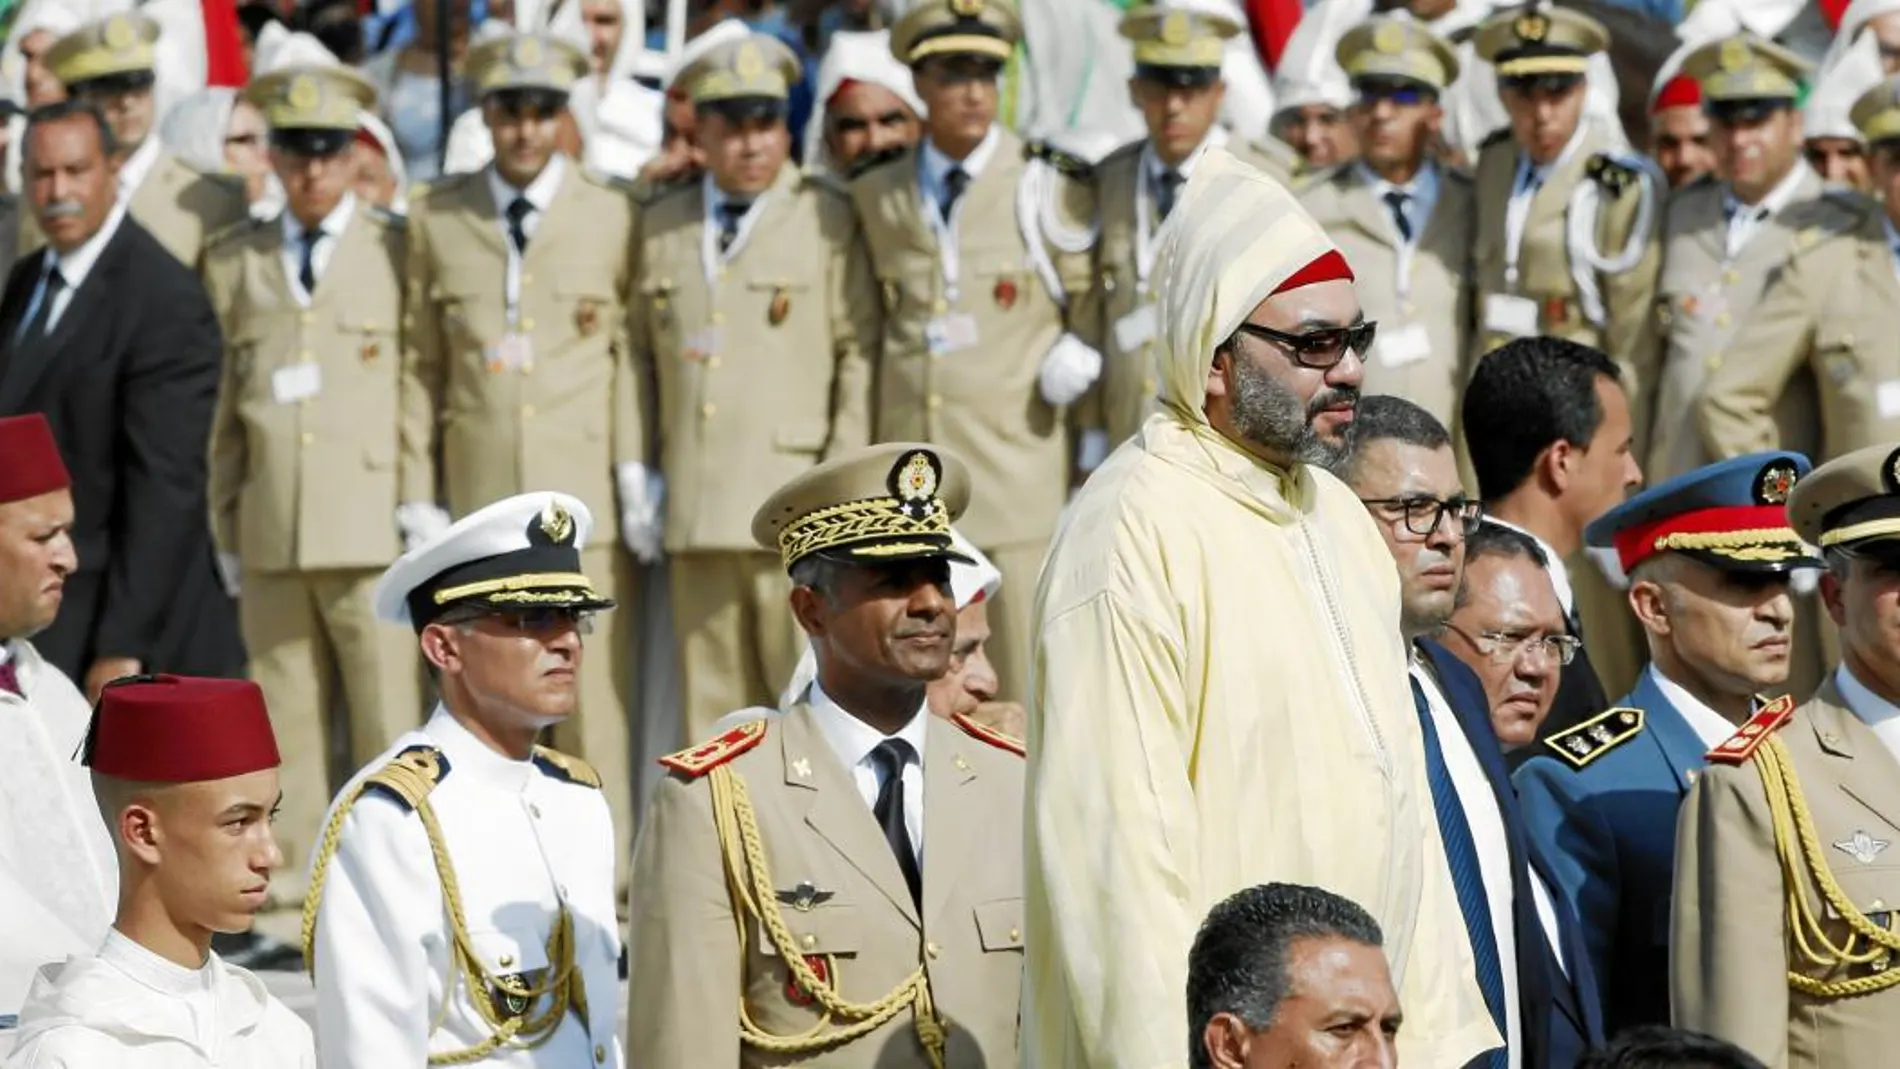 El rey de Marruecos, Mohammed VI, durante la Fiesta del Trono de Marruecos que conmemora el XIX aniversario del su ascenso al trono / Ap